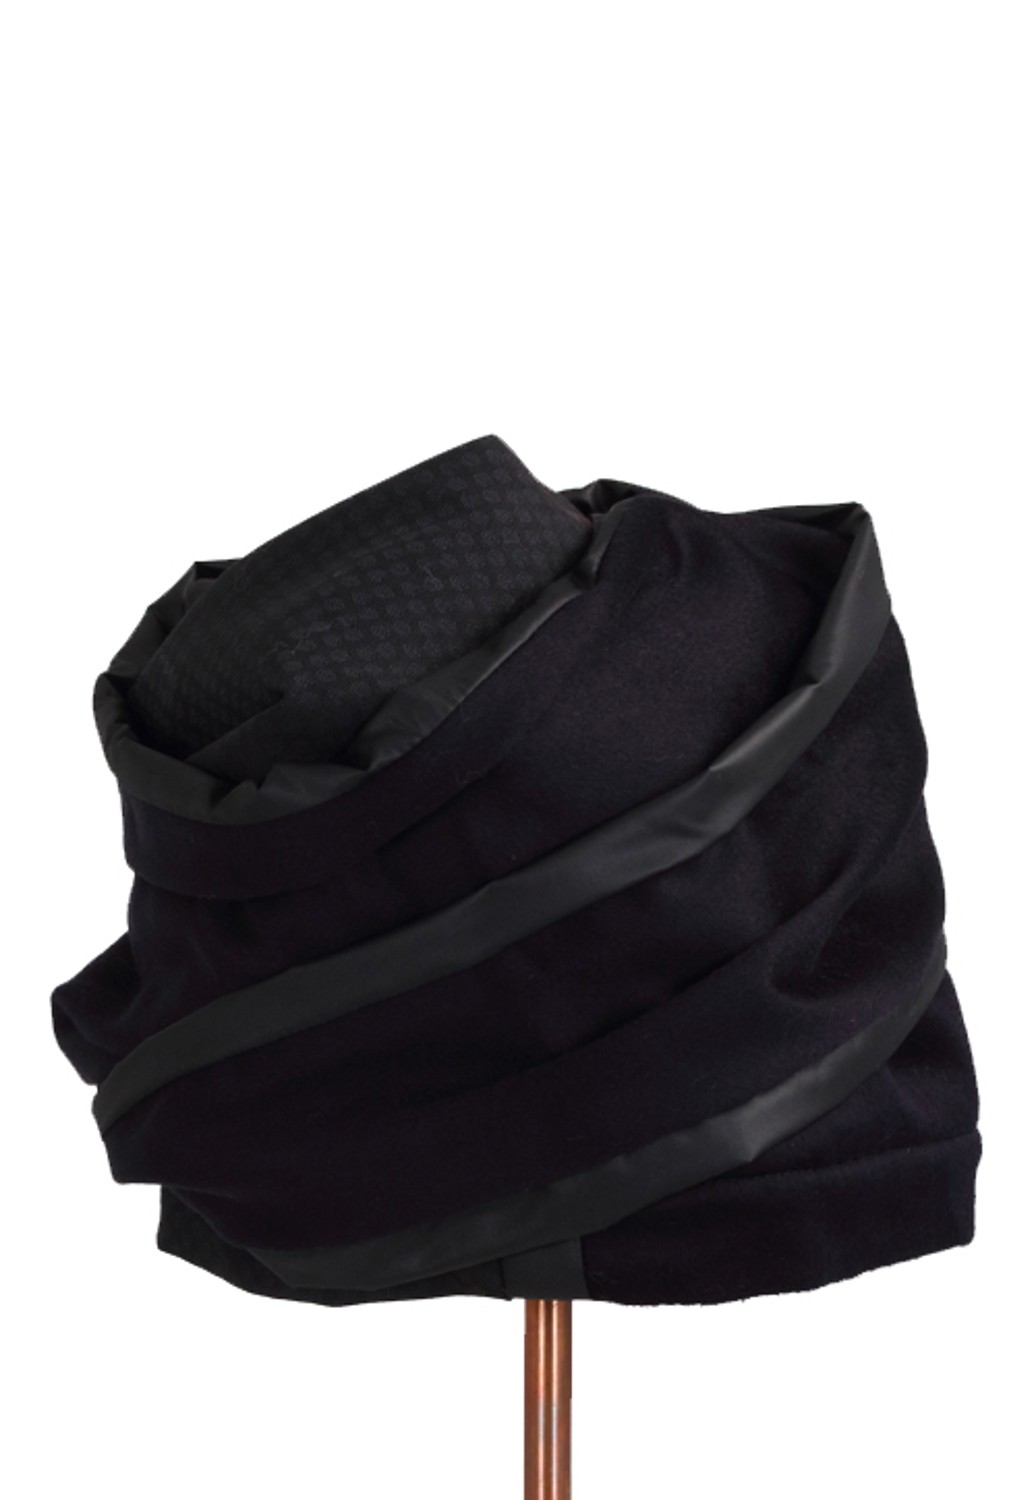 shop Flapper Sales Accessori: Cappello Flapper, modello Atena, in nylon blu e lana nera, patchwork.

Composizione: 95% lana, 5% nylon. number 1543